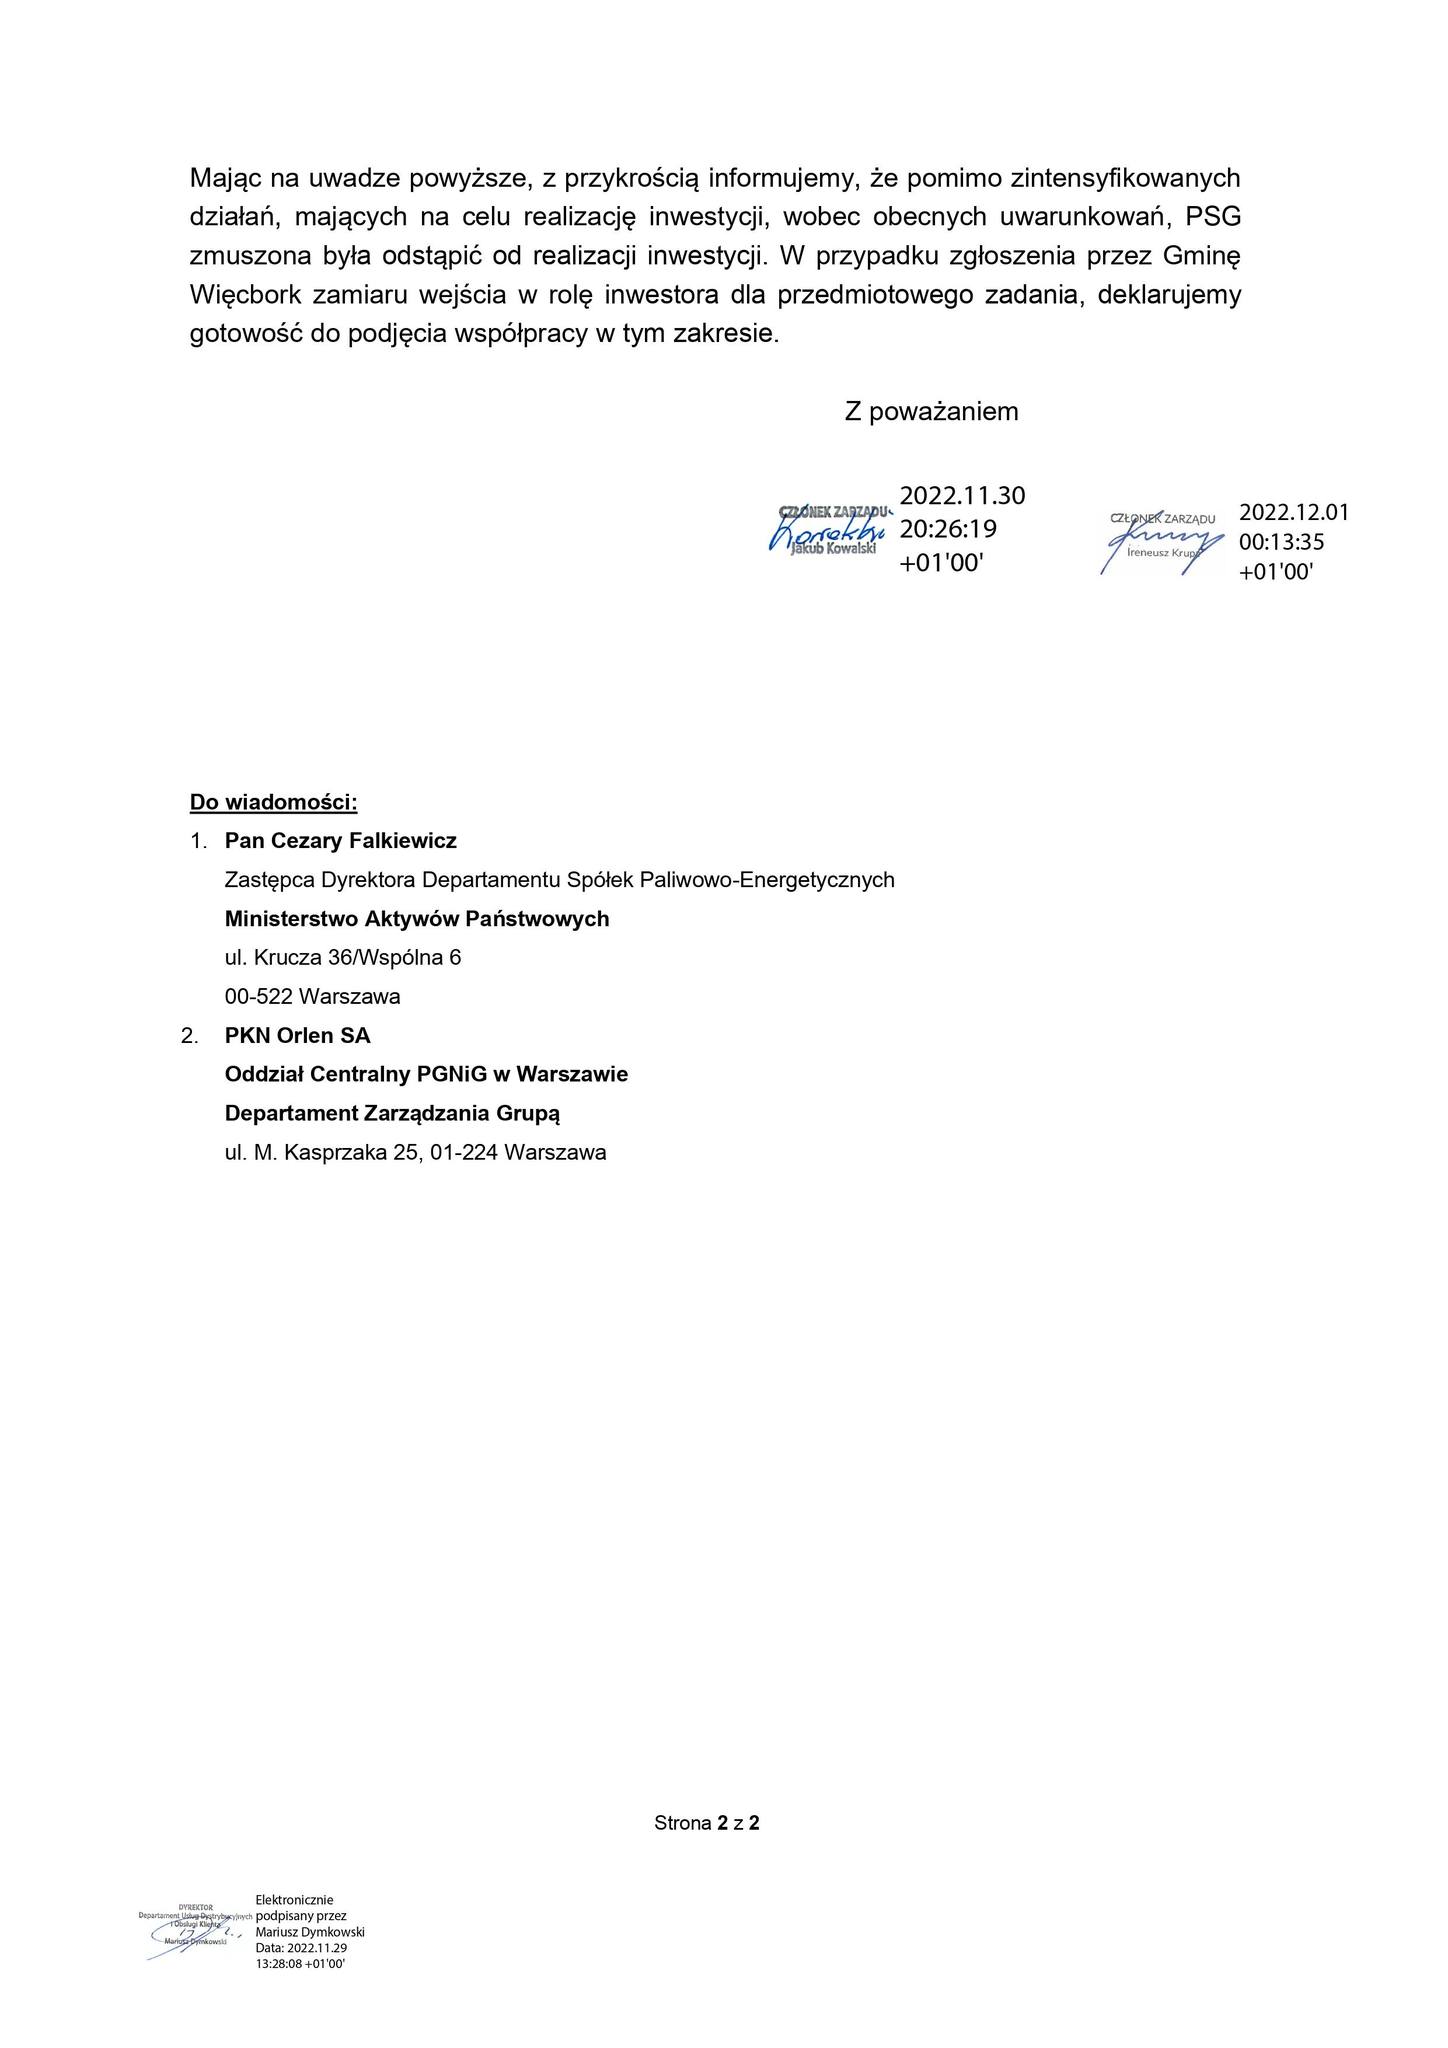 Pilne ! PSG w Warszawie zrezygnowała z gazyfikacji ziemnej Więcborka choć miało na ten cel prawie 12 mln zł. dotacji z UE przy całym koszcie inwestycji 19 mln zł